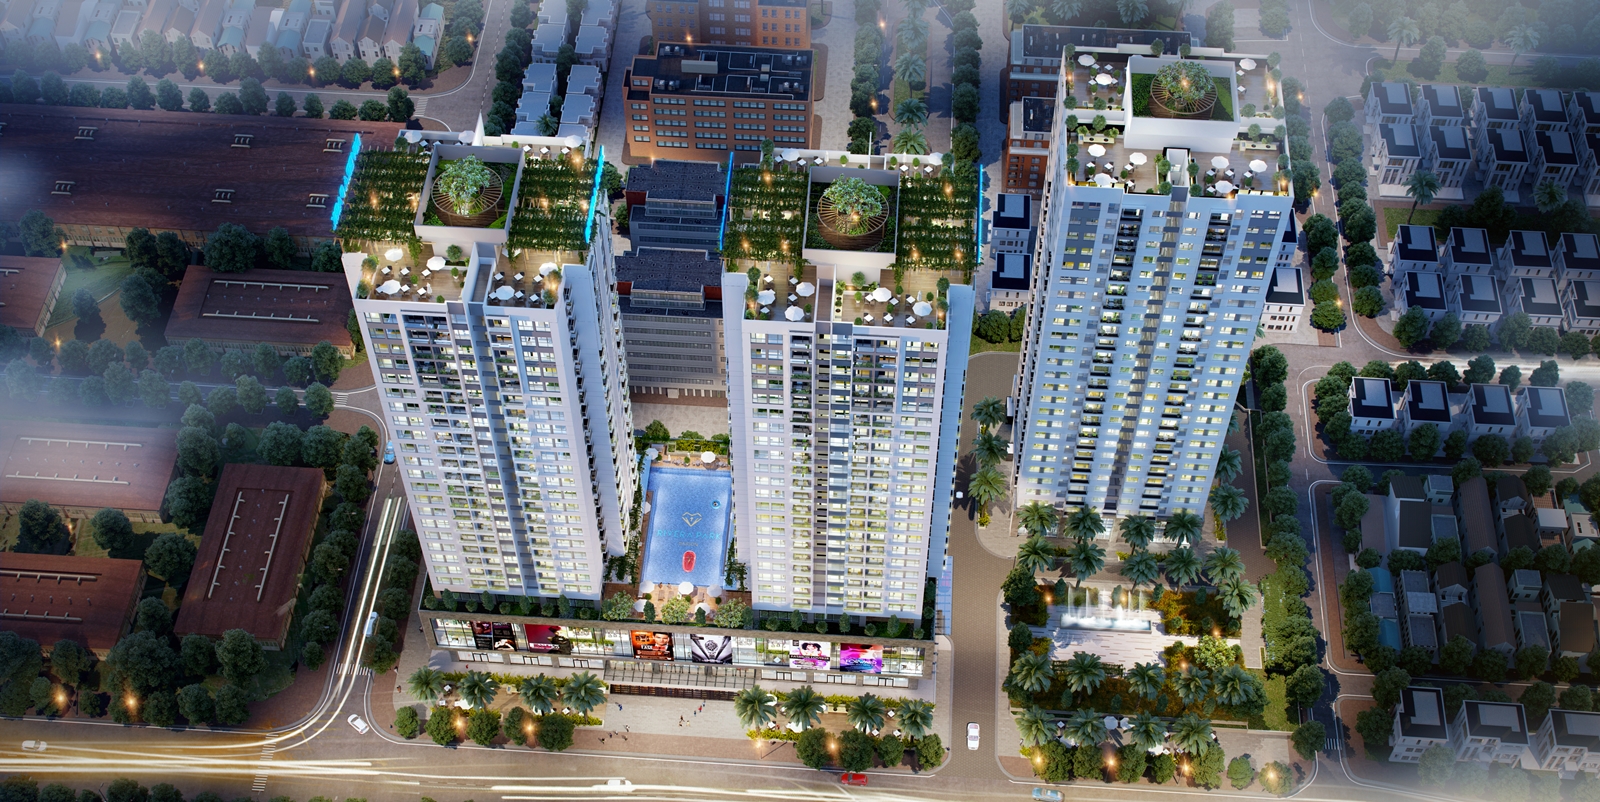 Thiết kế căn hộ Rivera Park Sài Gòn của chúng tôi sẽ mang đến cho bạn không gian sống hiện đại và sang trọng. Với sự pha trộn giữa yếu tố địa phương và quốc tế, chúng tôi cam kết sẽ đem đến cho bạn trải nghiệm sống tuyệt vời hơn cả những gì bạn mong đợi.